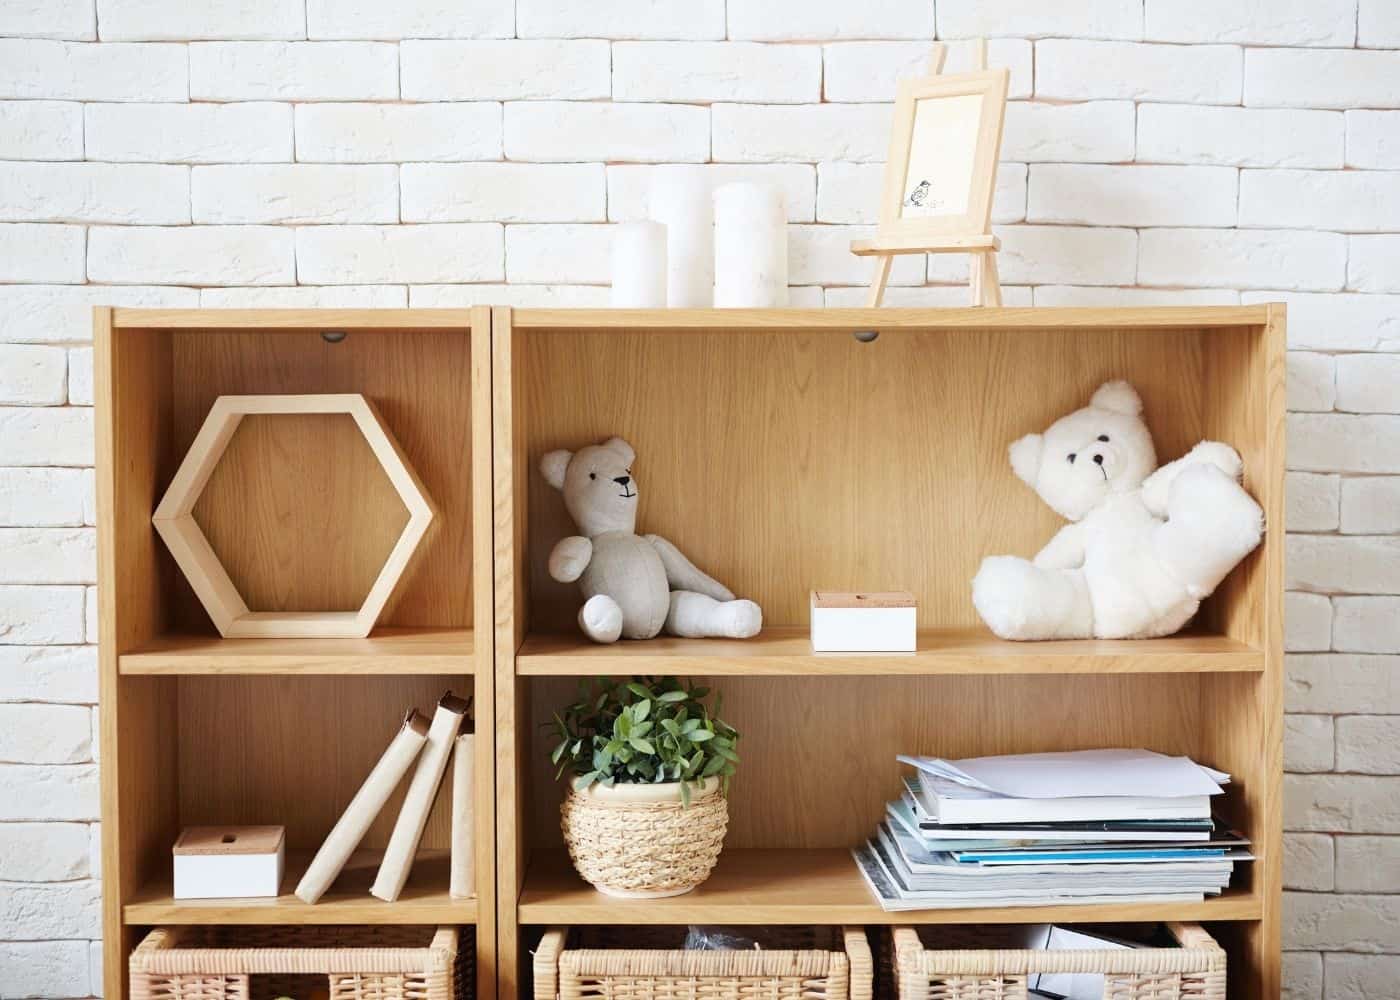 Shelves for Storing Toys - Plain Wood